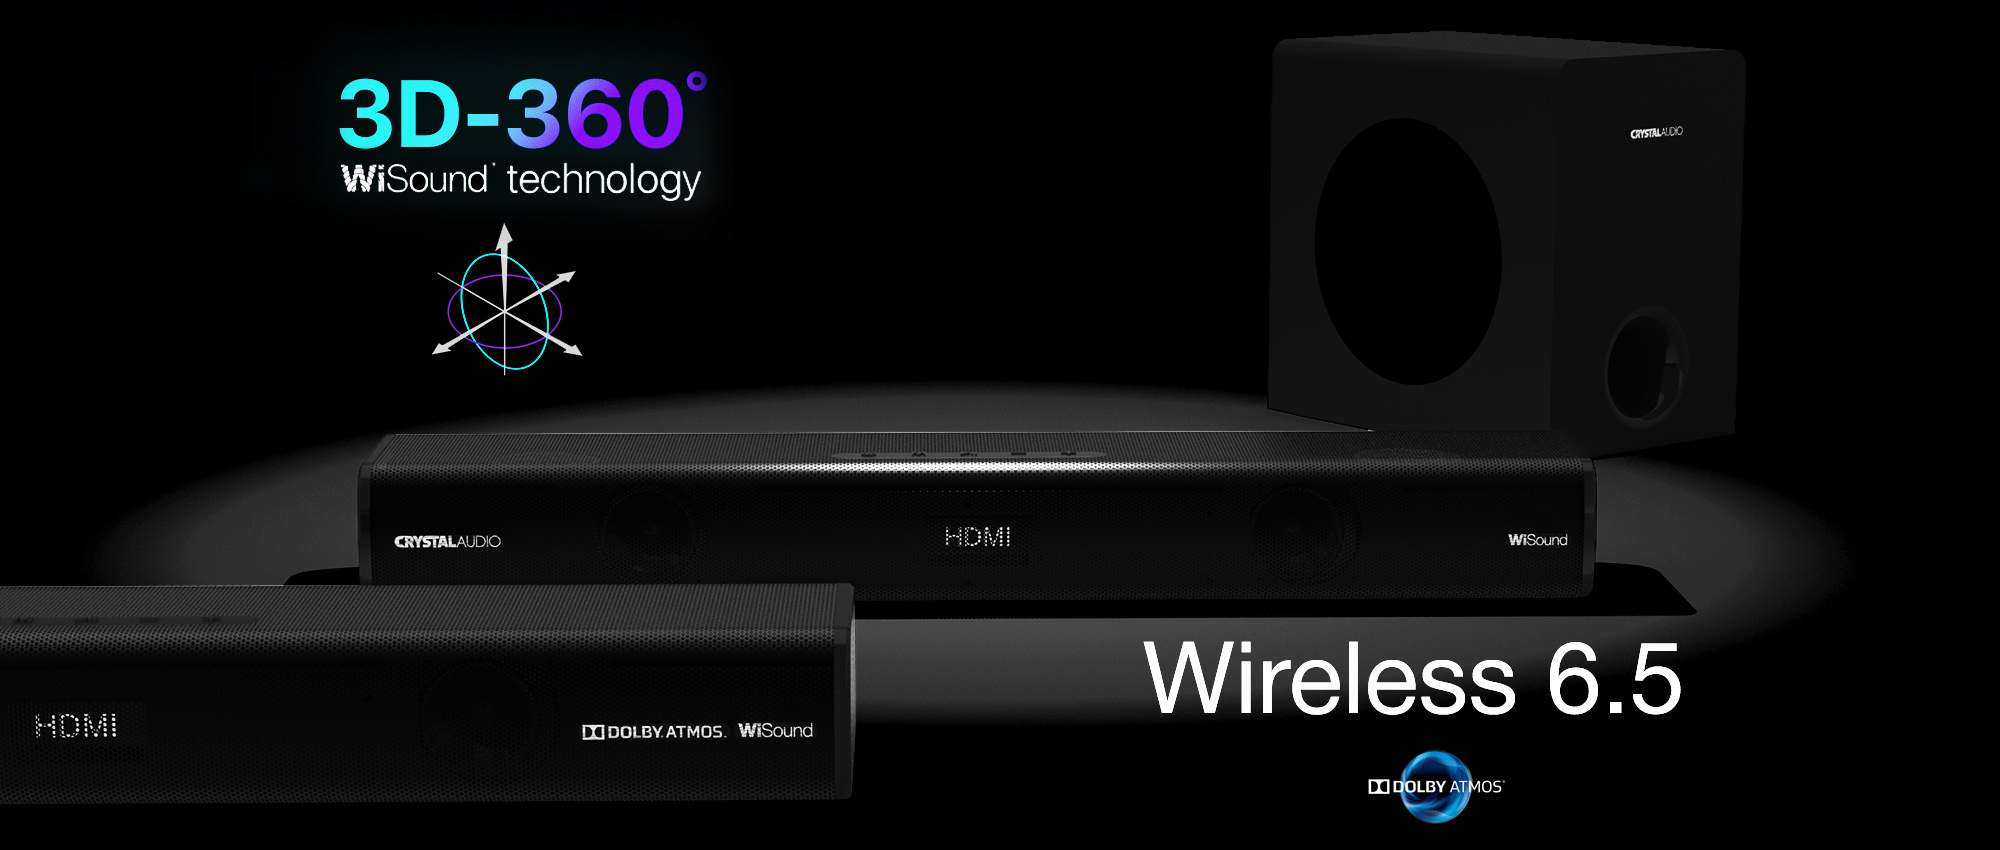 Wireless 6.5"